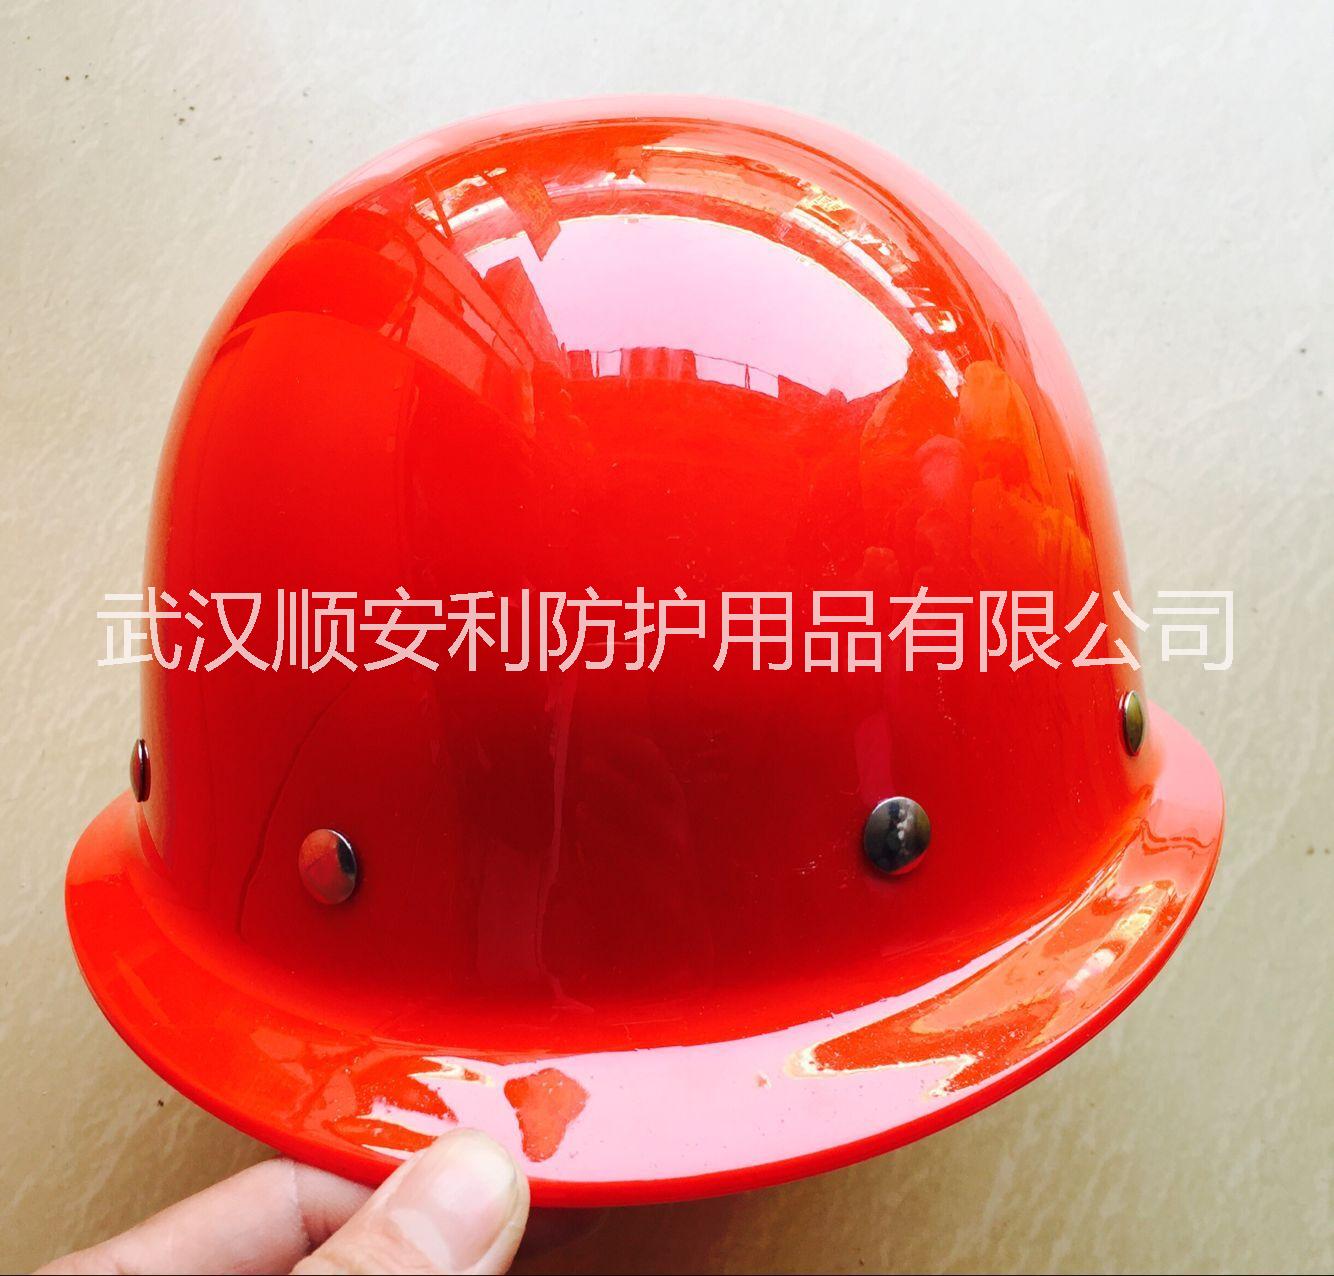 武汉市铆钉玻璃钢安全帽厂家武汉玻璃钢安全帽圆形玻璃钢安全帽工地防护帽价格铆钉玻璃钢安全帽